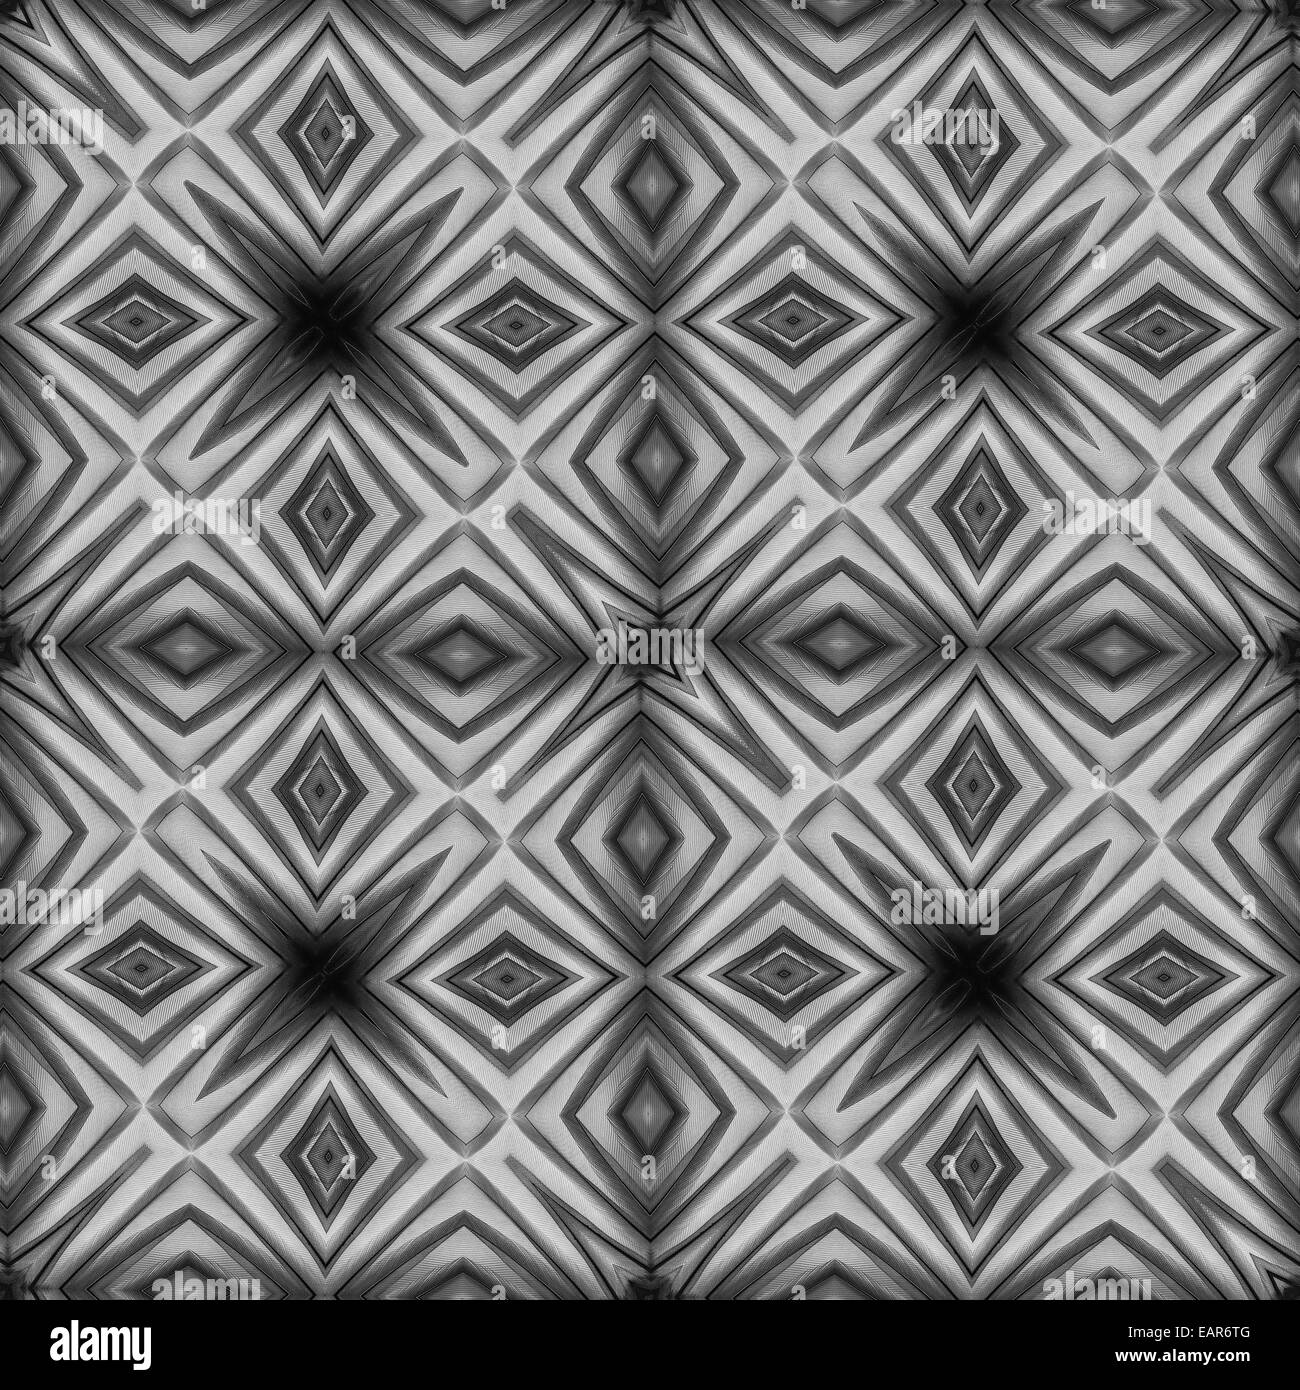 Seamless pattern astratti, in bianco e nero di texture in piuma. Foto Stock